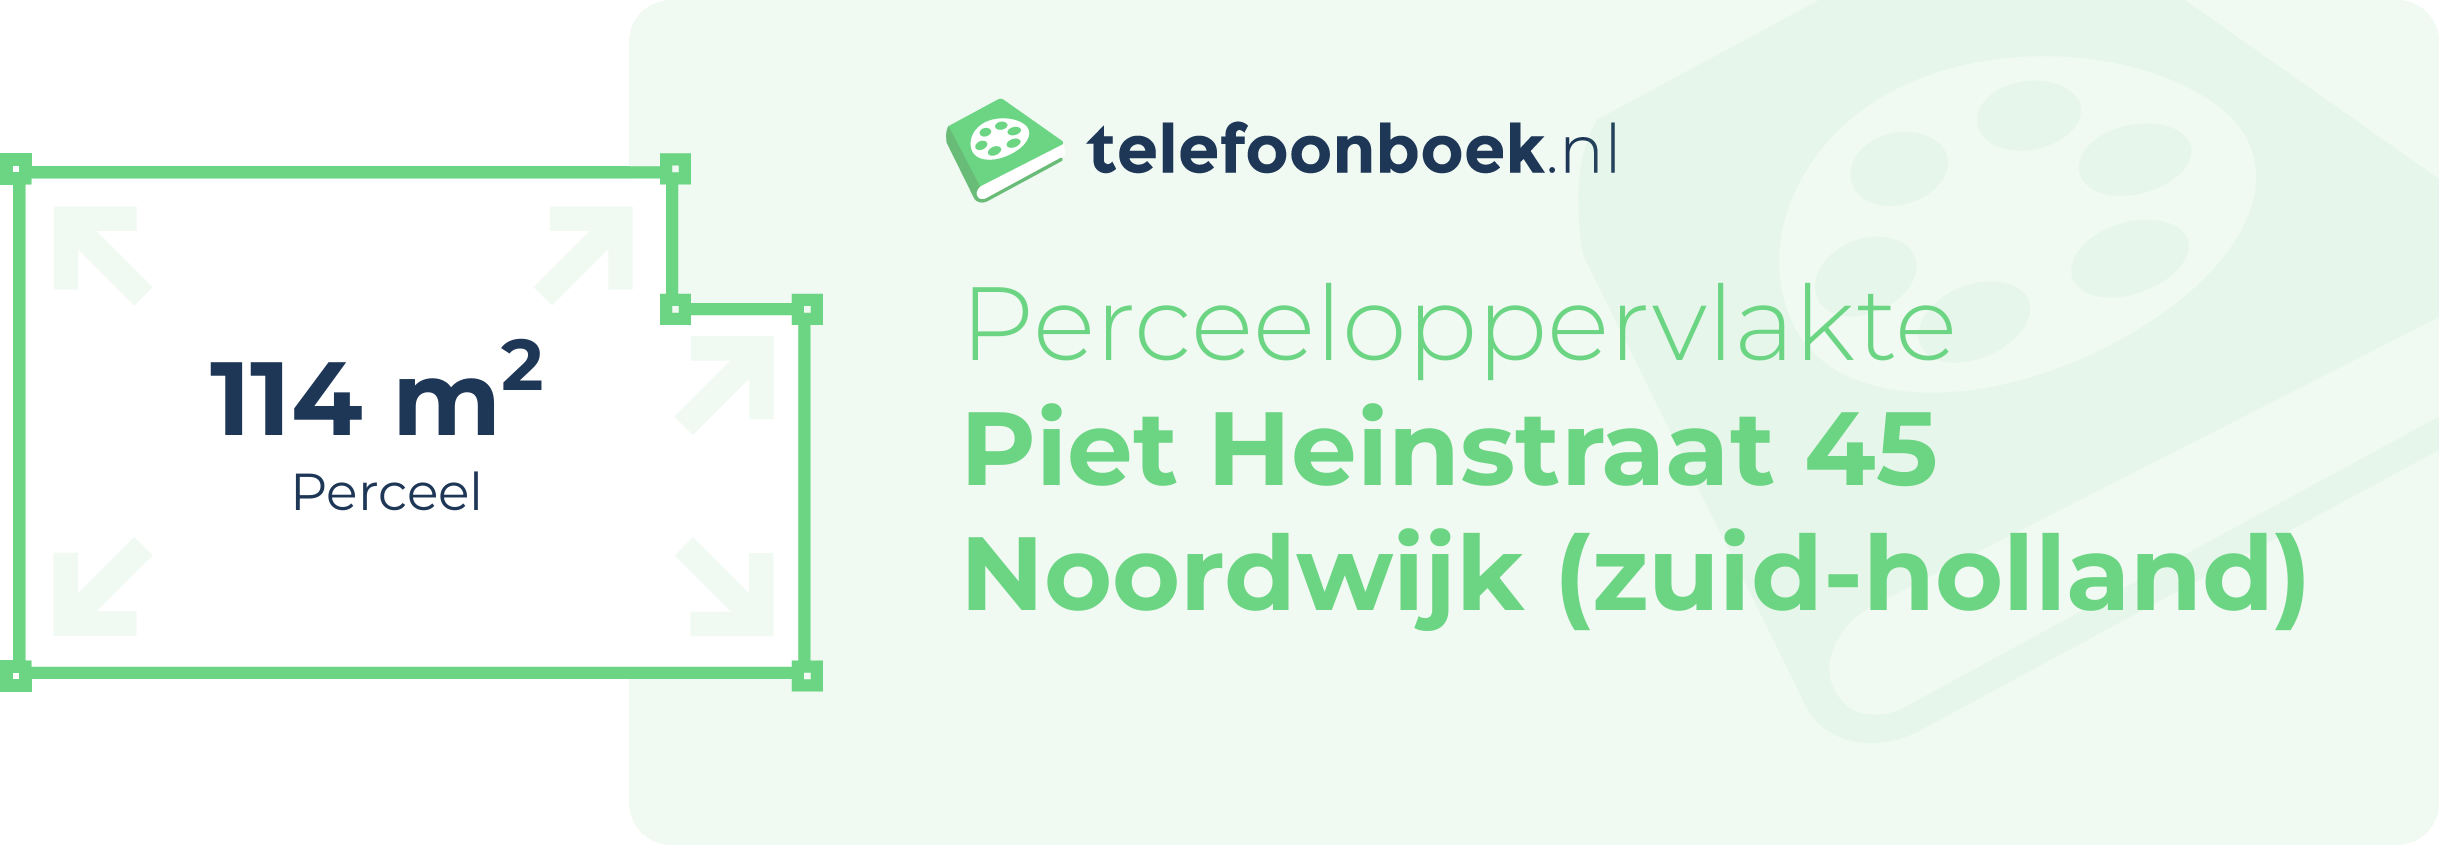 Perceeloppervlakte Piet Heinstraat 45 Noordwijk (Zuid-Holland)